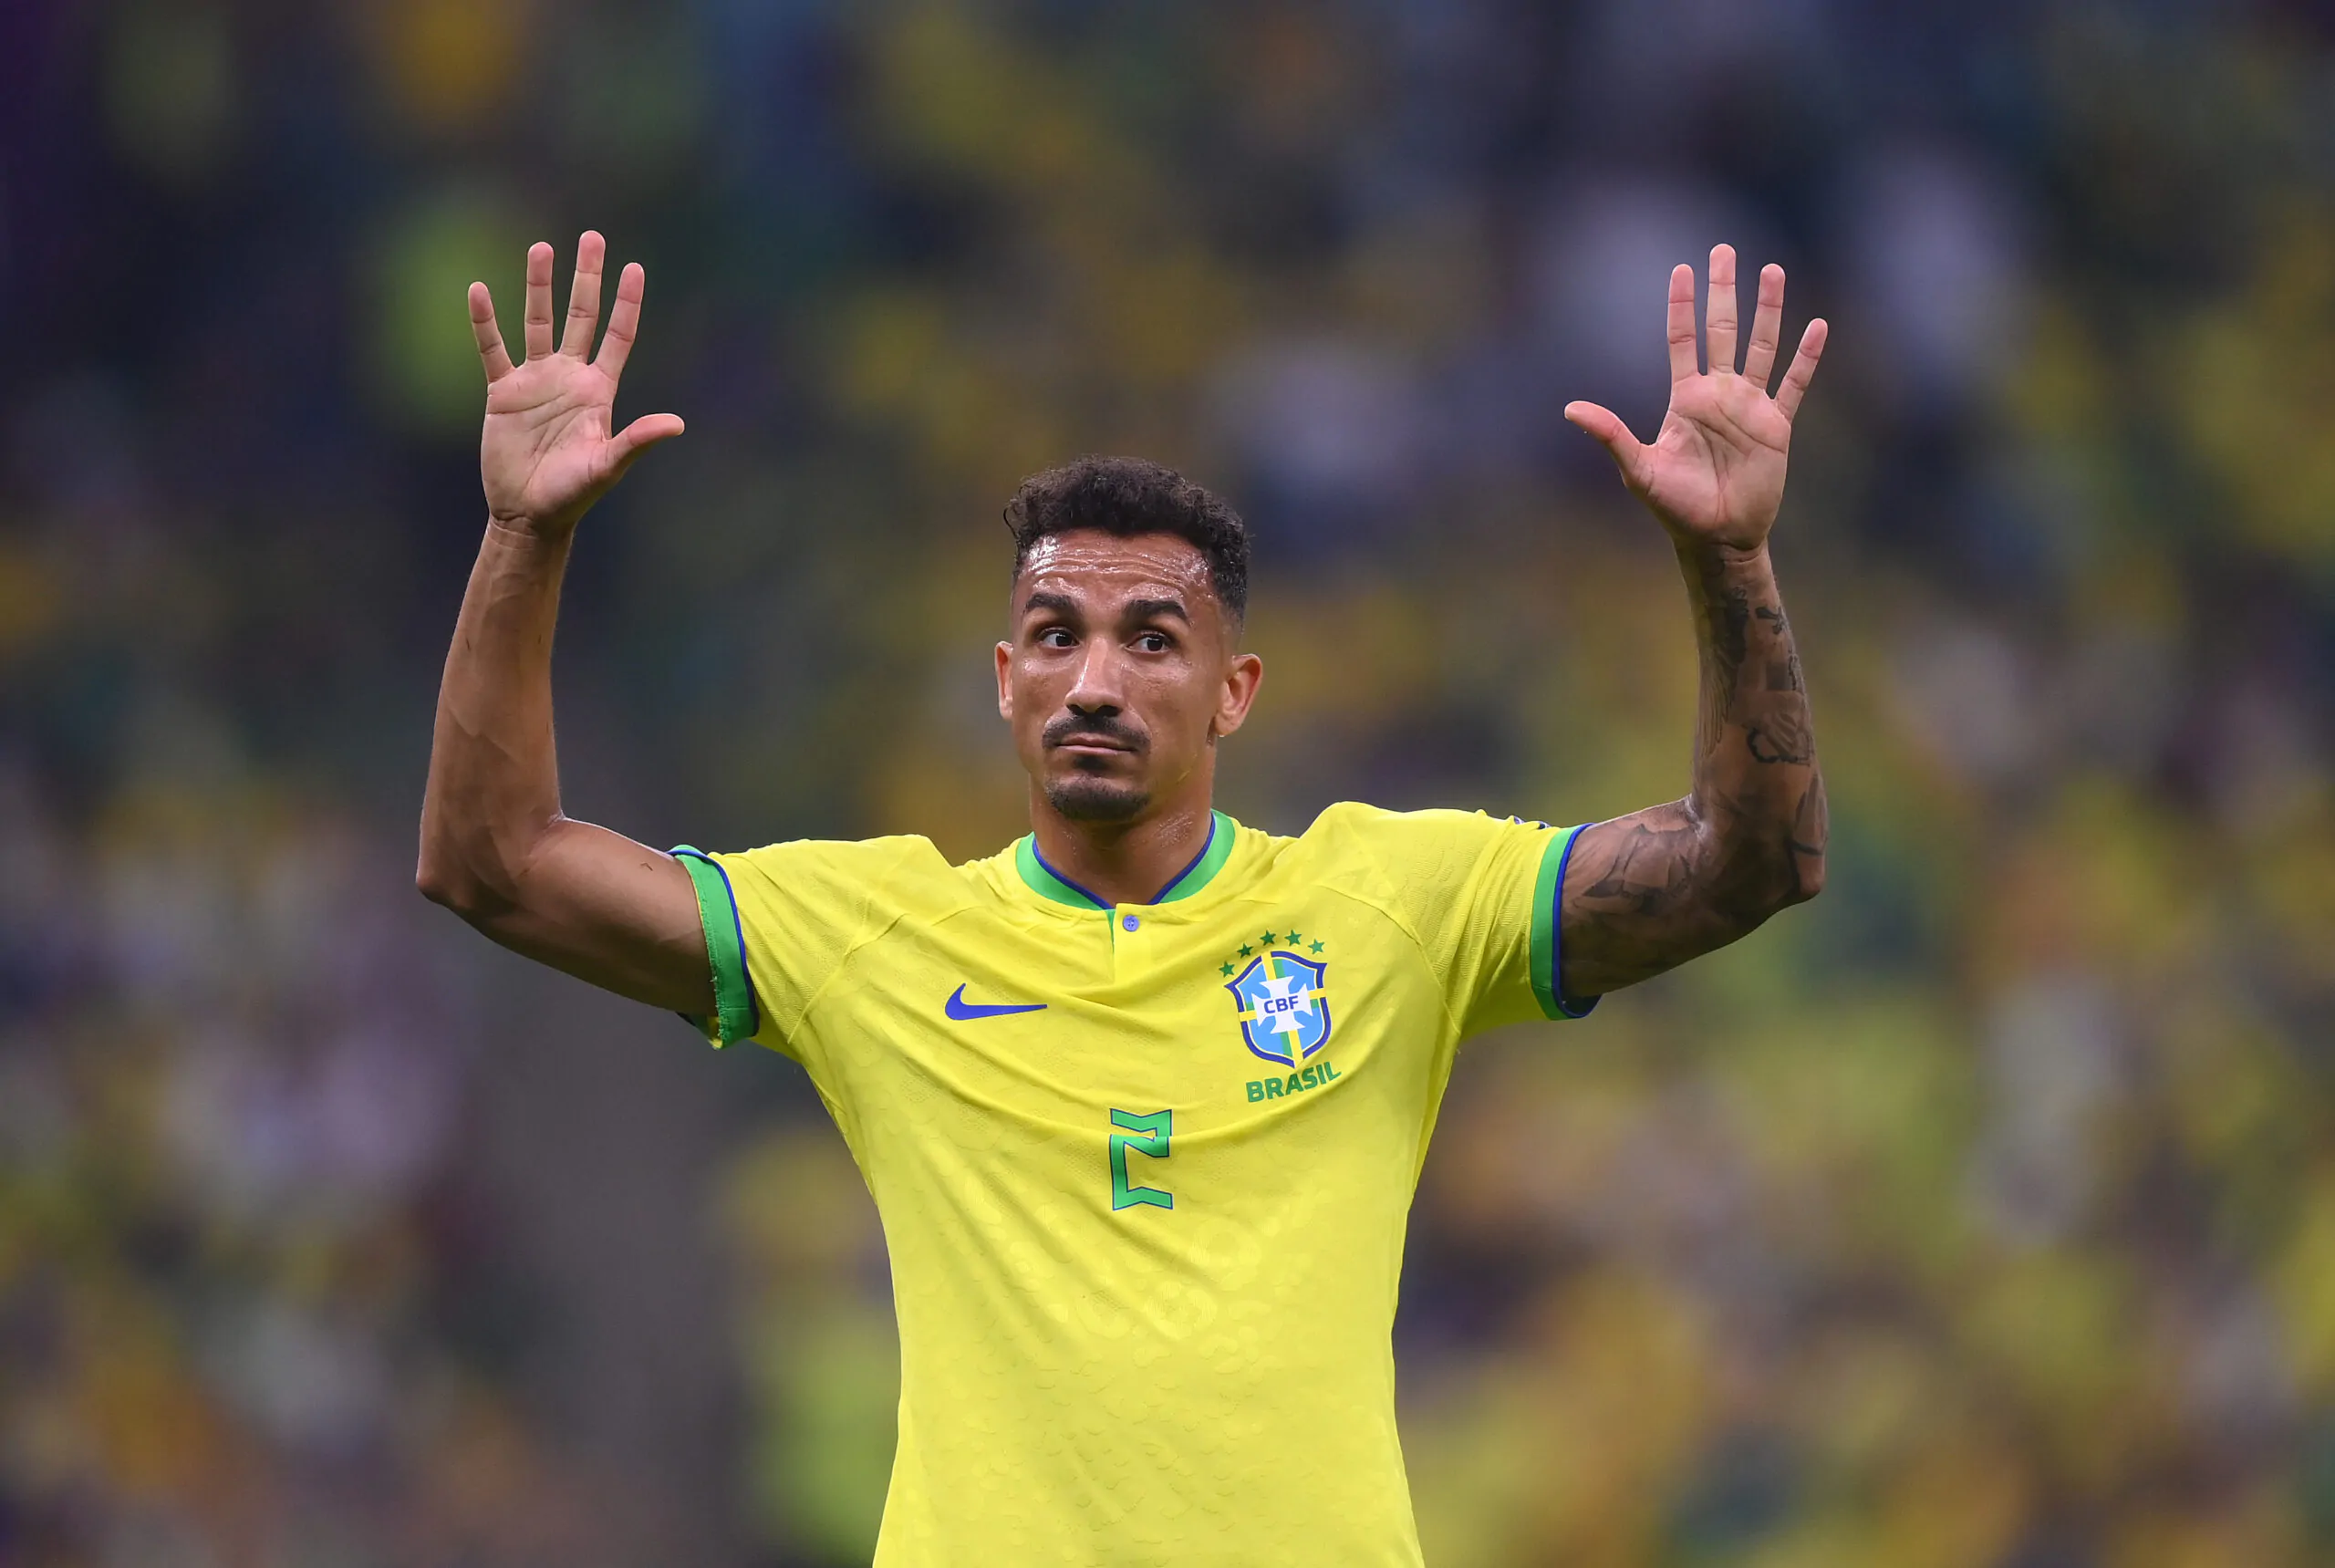 Danilo dopo Brasile-Corea: “Grande vittoria, dedicata a Pelé”, poi la curiosità sull’esultanza